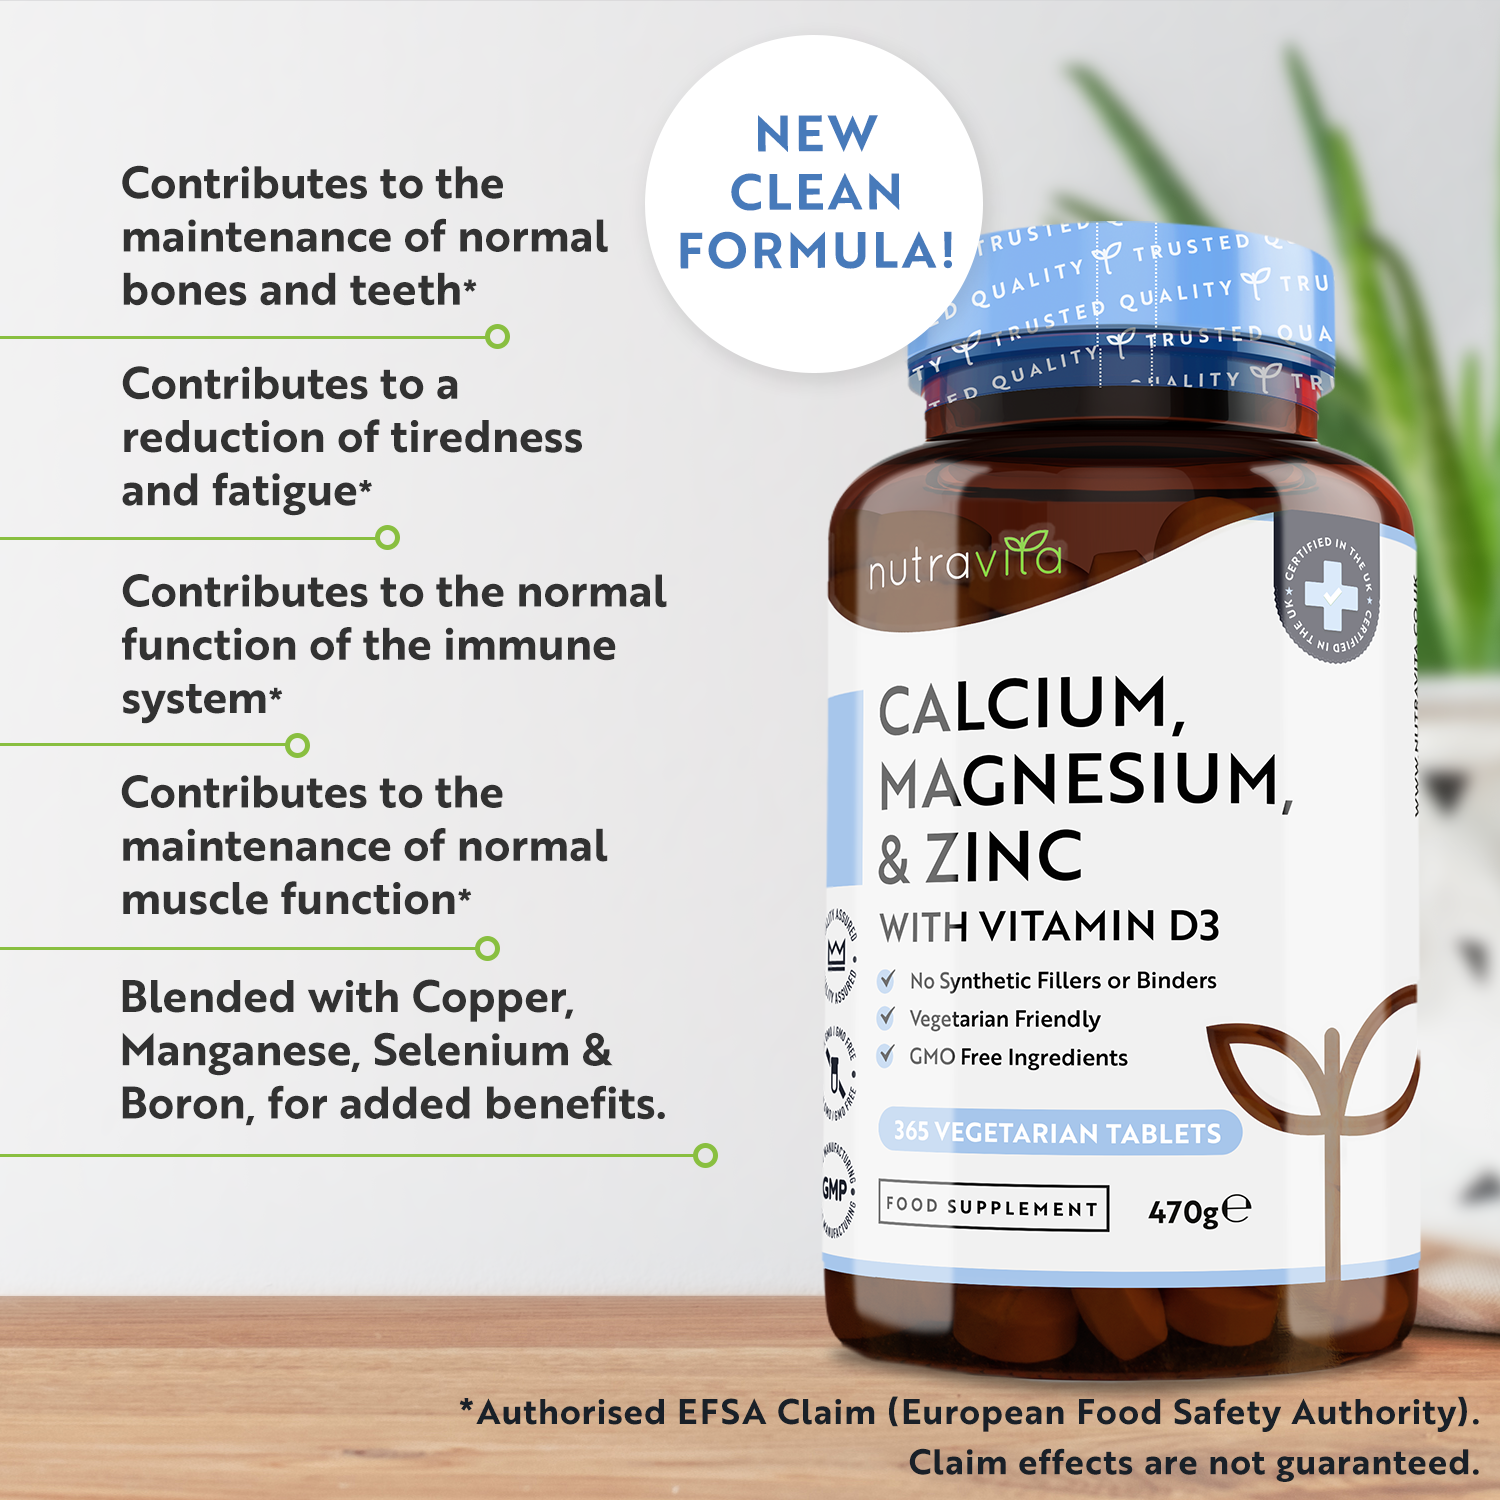 Calcium Magnesium Zinc & Vitamin D3 - 365 Vegetarian Tablets